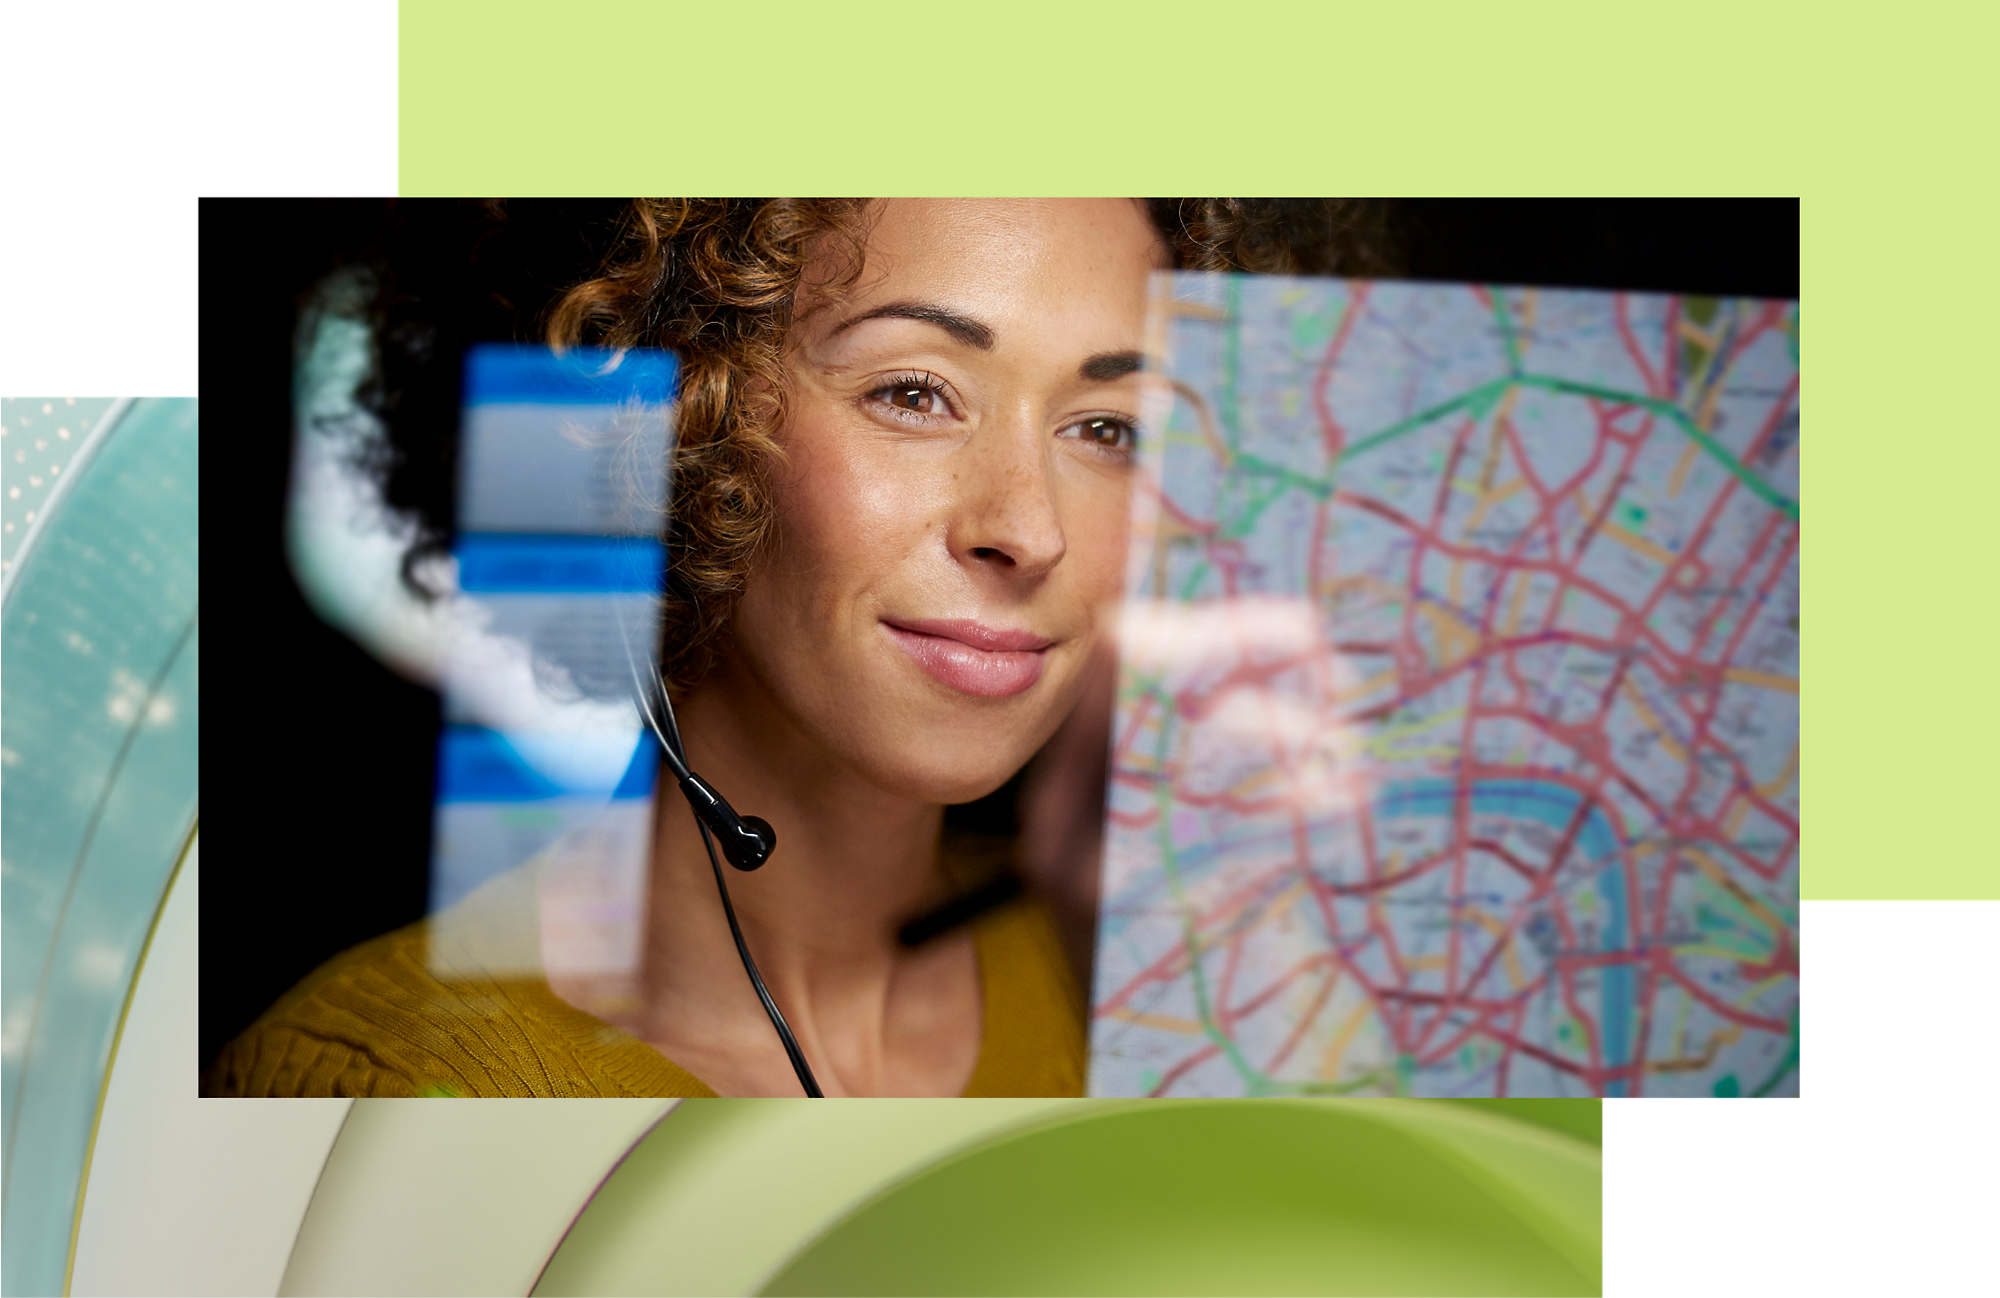 Un agent de service clientèle qui porte un casque et sourit tout en regardant une carte sur un écran numérique